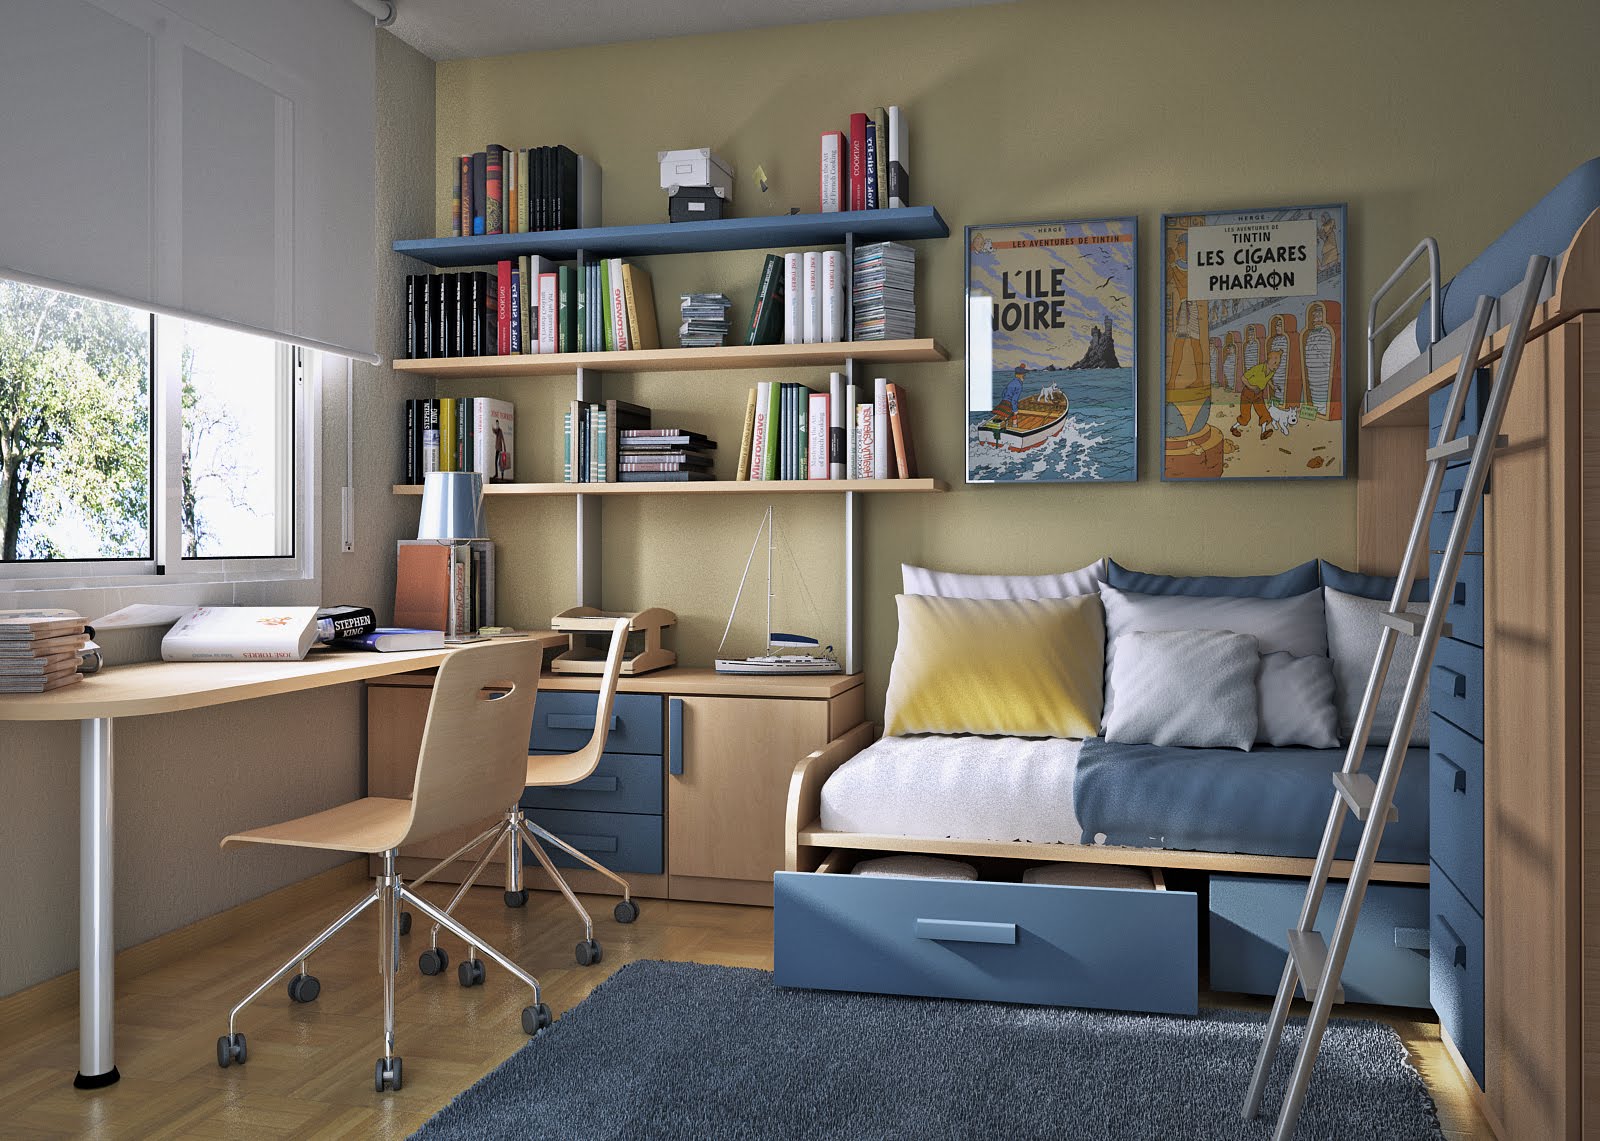 10 tips on small bedroom interior design homesthetics 4.jpg